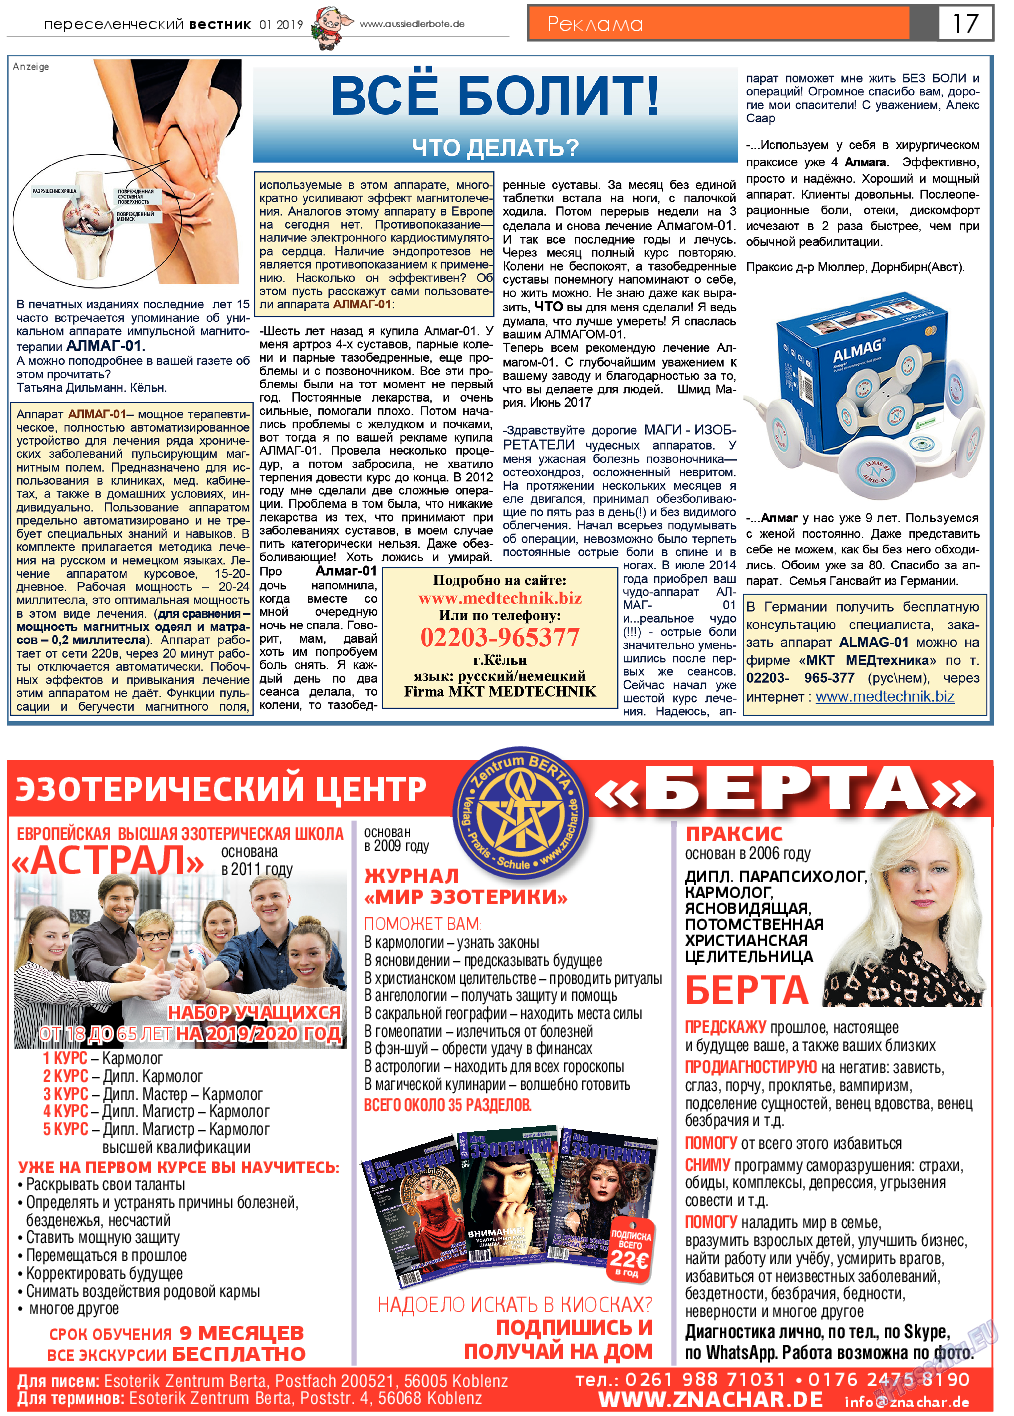 Переселенческий вестник (газета). 2019 год, номер 1, стр. 17